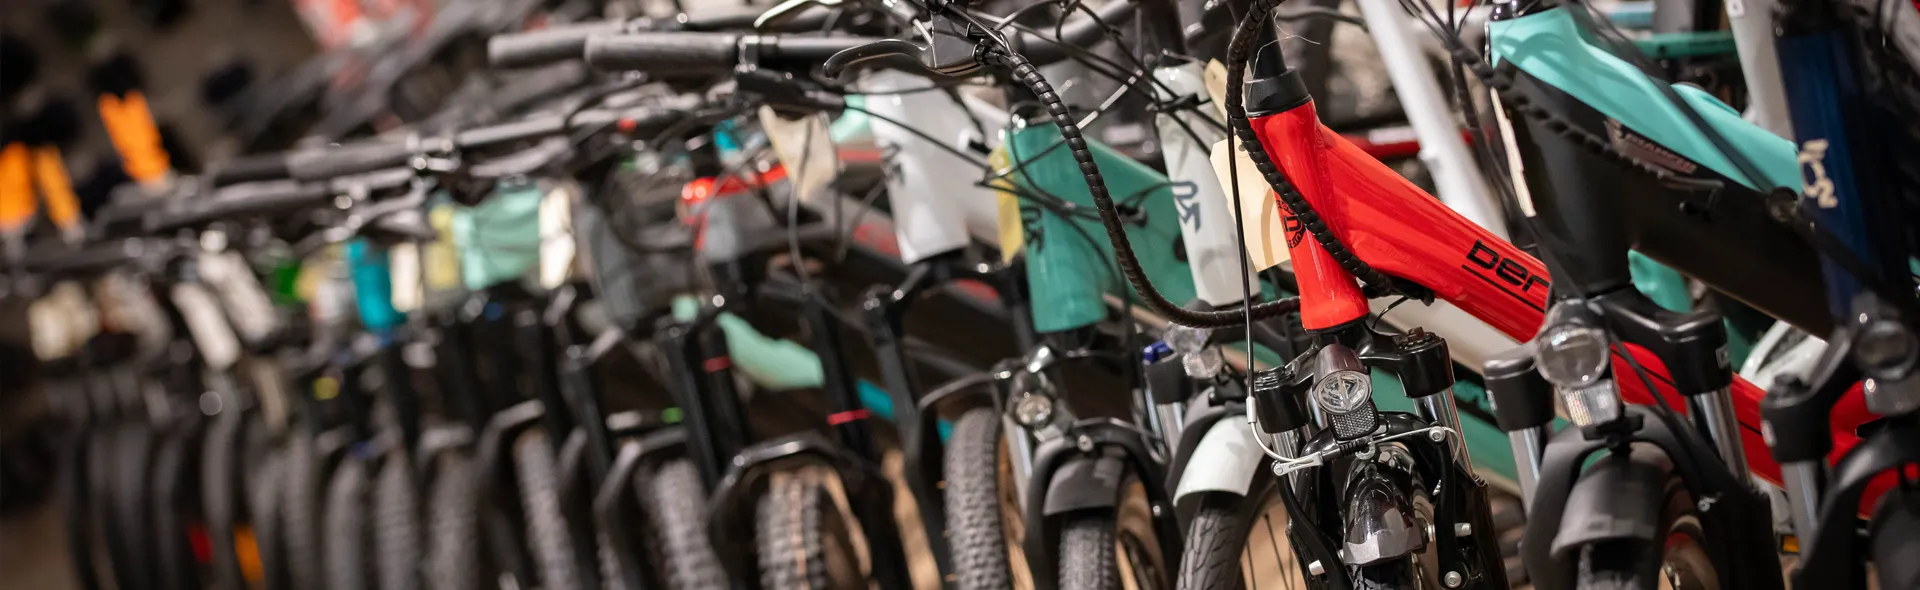 Tendance Vélo c'est le spécialiste de la vente et de la réparation toutes marques de vélos en tous genres. Spécialiste du vélo électrique.